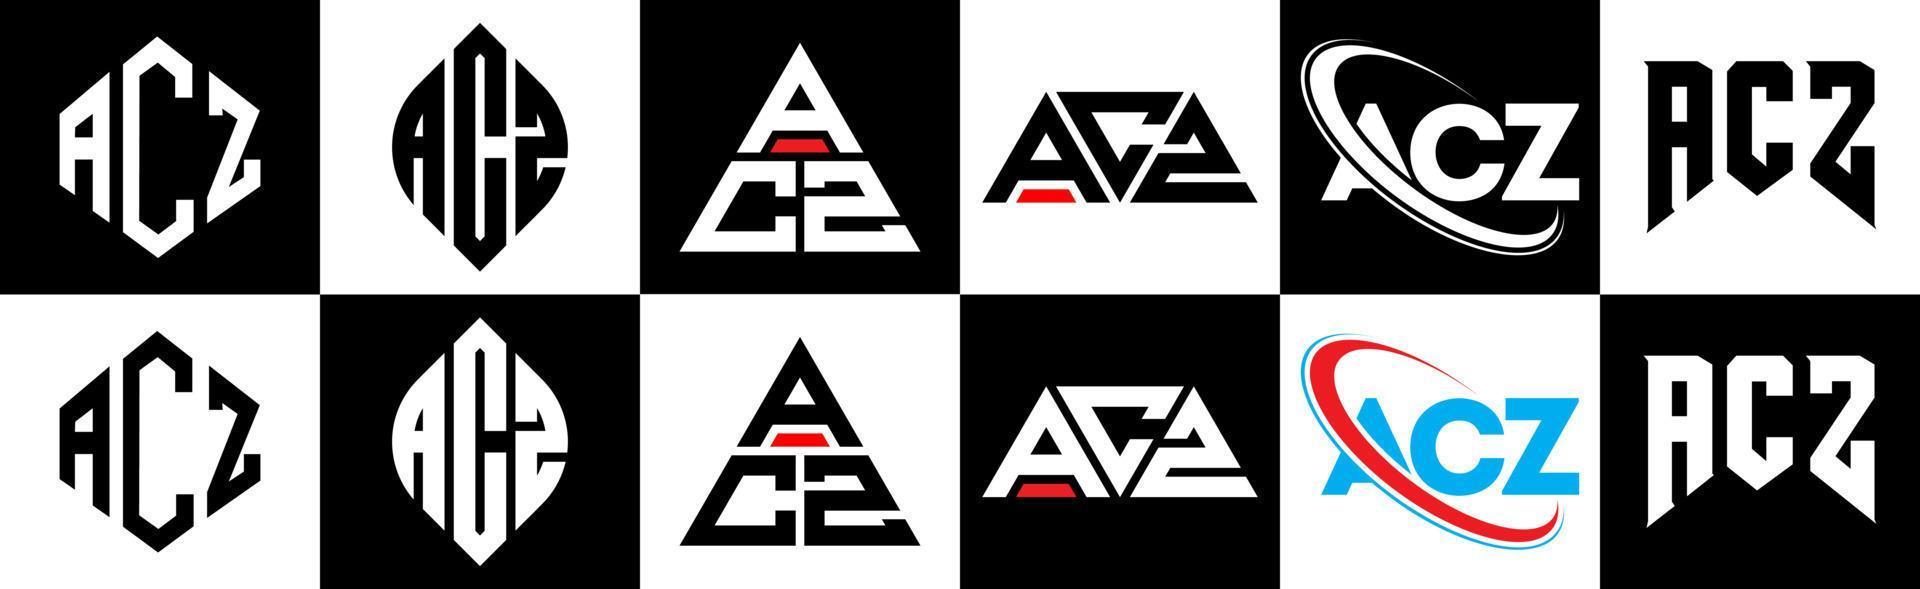 acz-Buchstaben-Logo-Design in sechs Stilen. acz polygon, kreis, dreieck, sechseck, flacher und einfacher stil mit schwarz-weißem buchstabenlogo in einer zeichenfläche. acz minimalistisches und klassisches Logo vektor